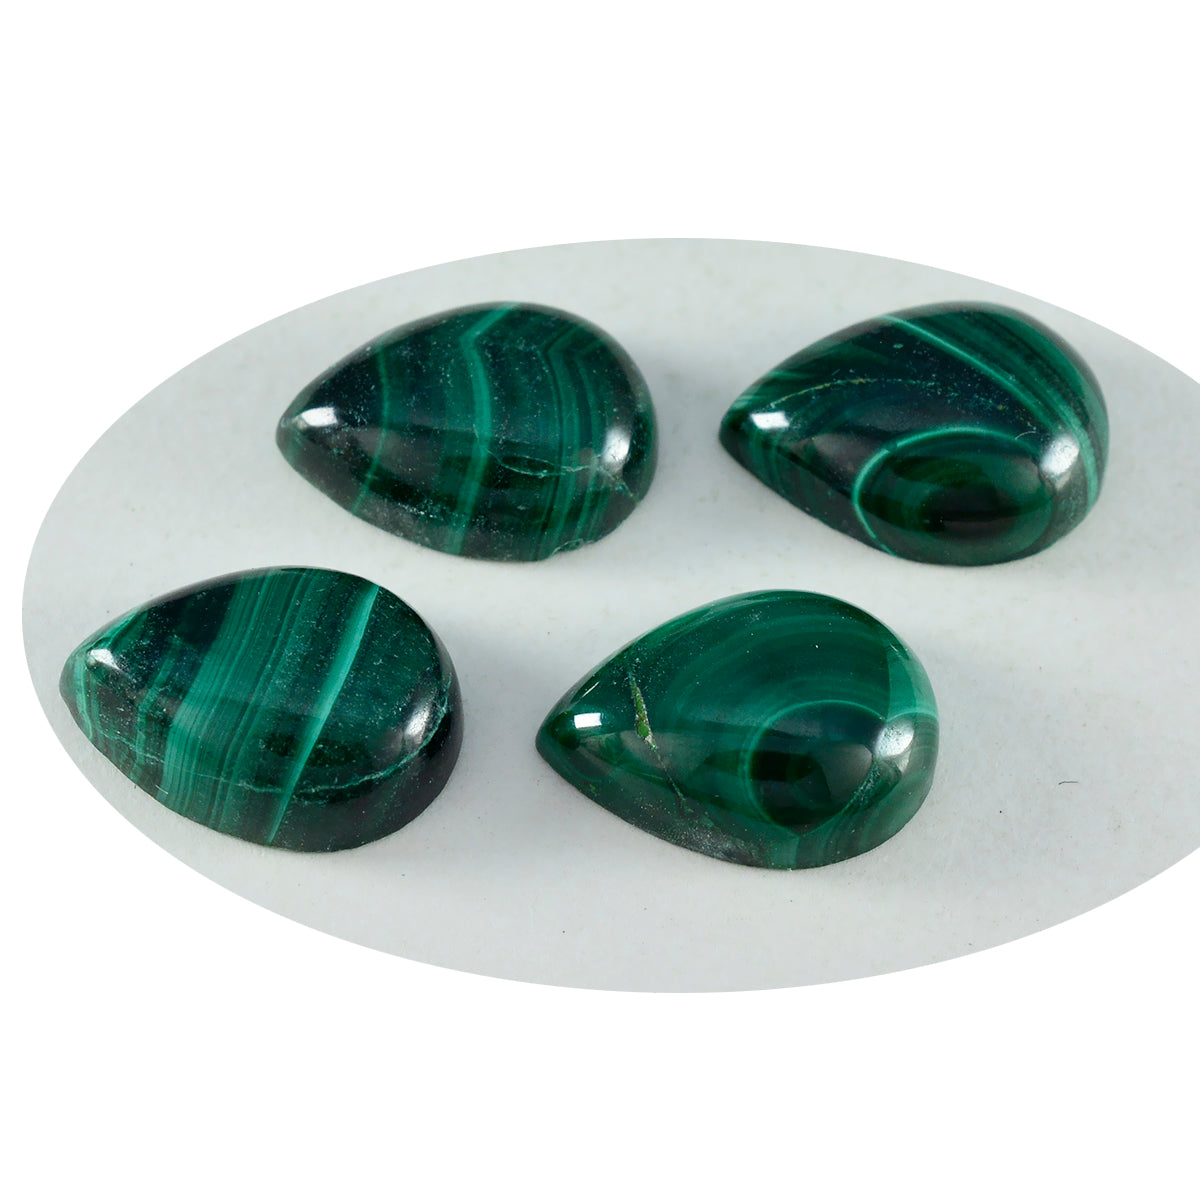 riyogems 1 pieza cabujón de malaquita verde 10x14 mm forma de pera piedra preciosa suelta de calidad atractiva